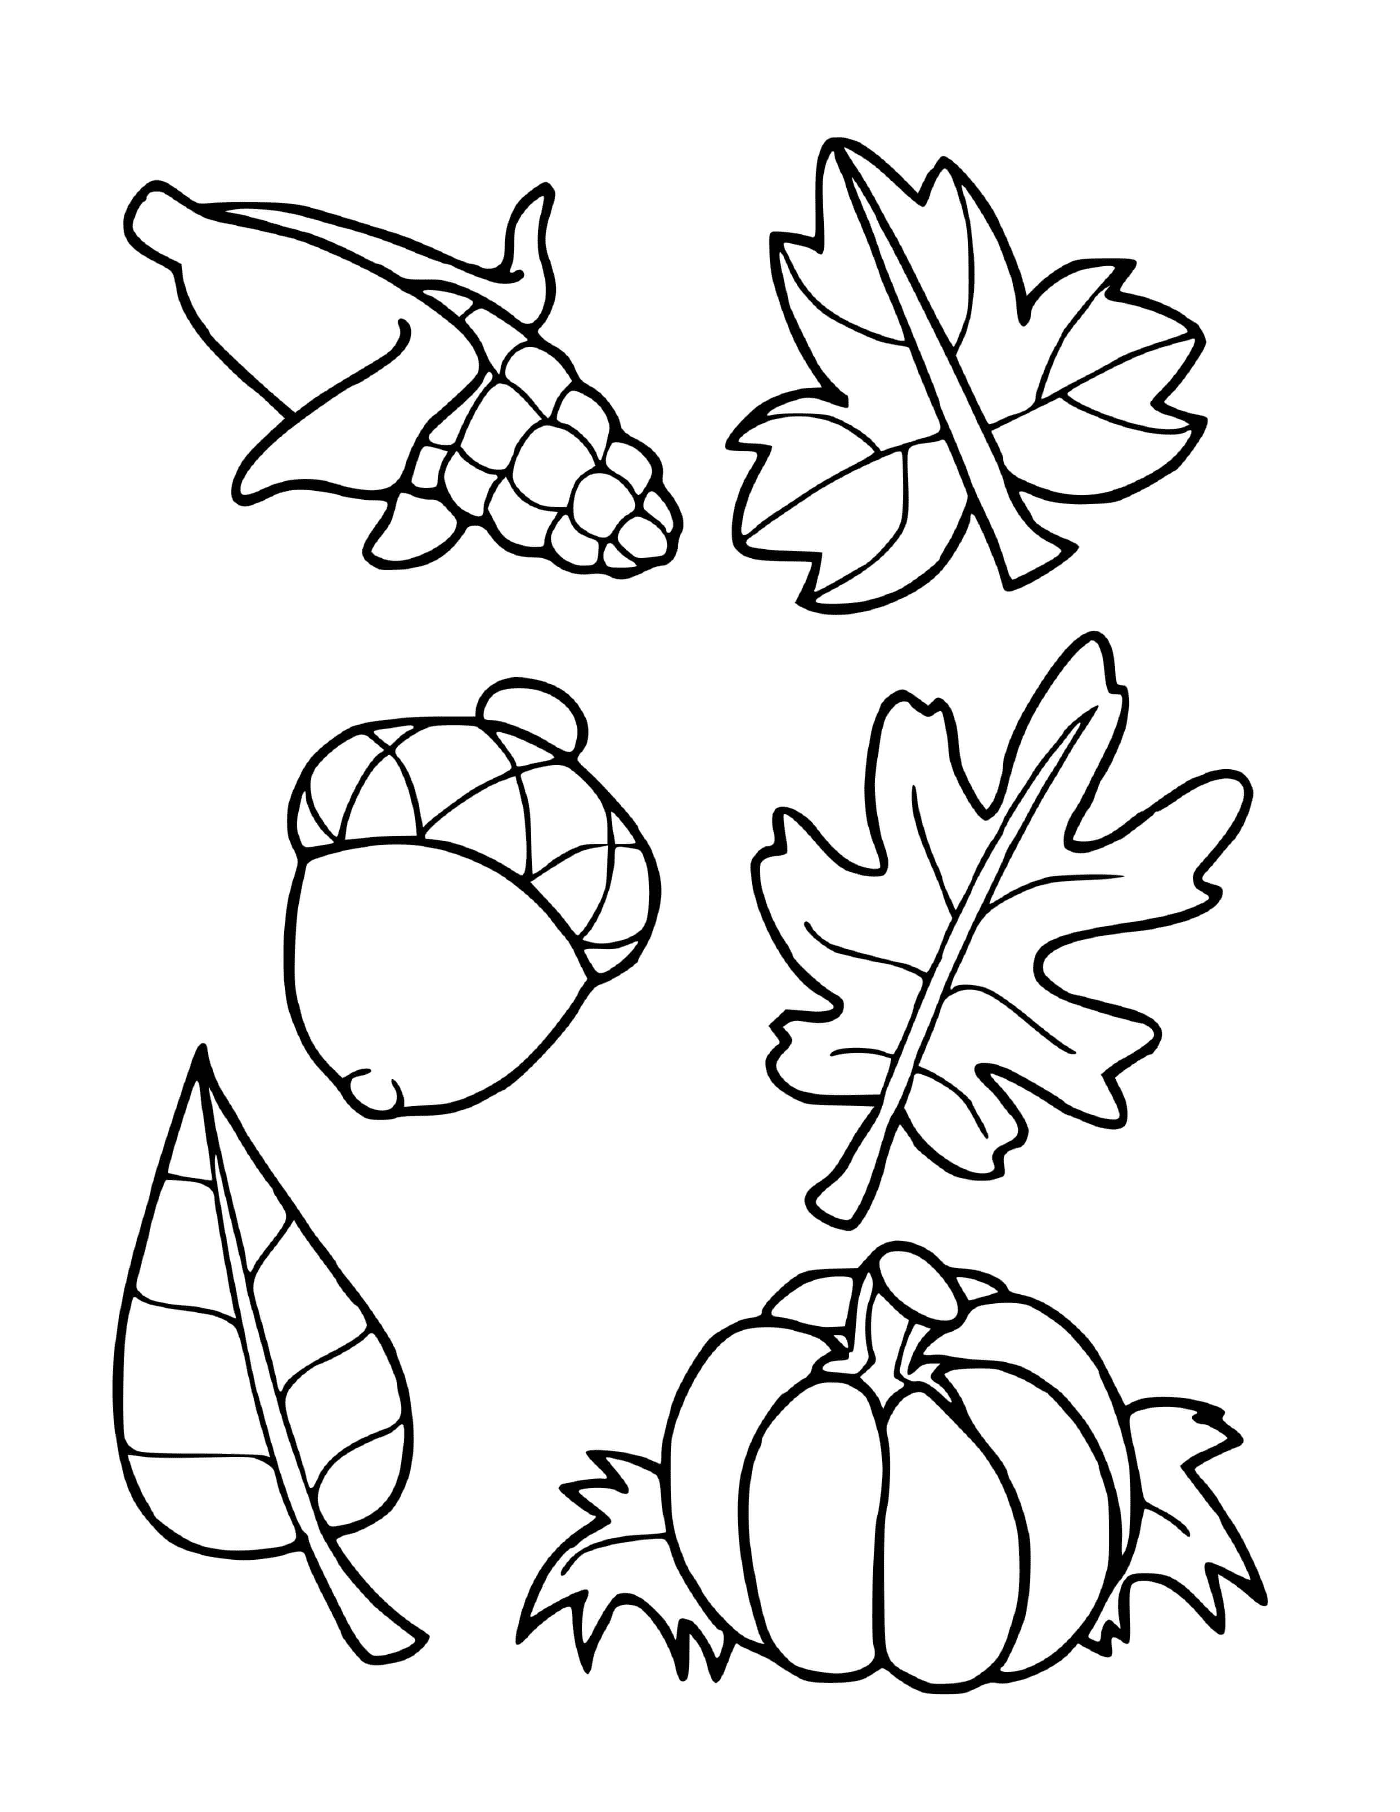  Seis hojas diferentes dibujadas 